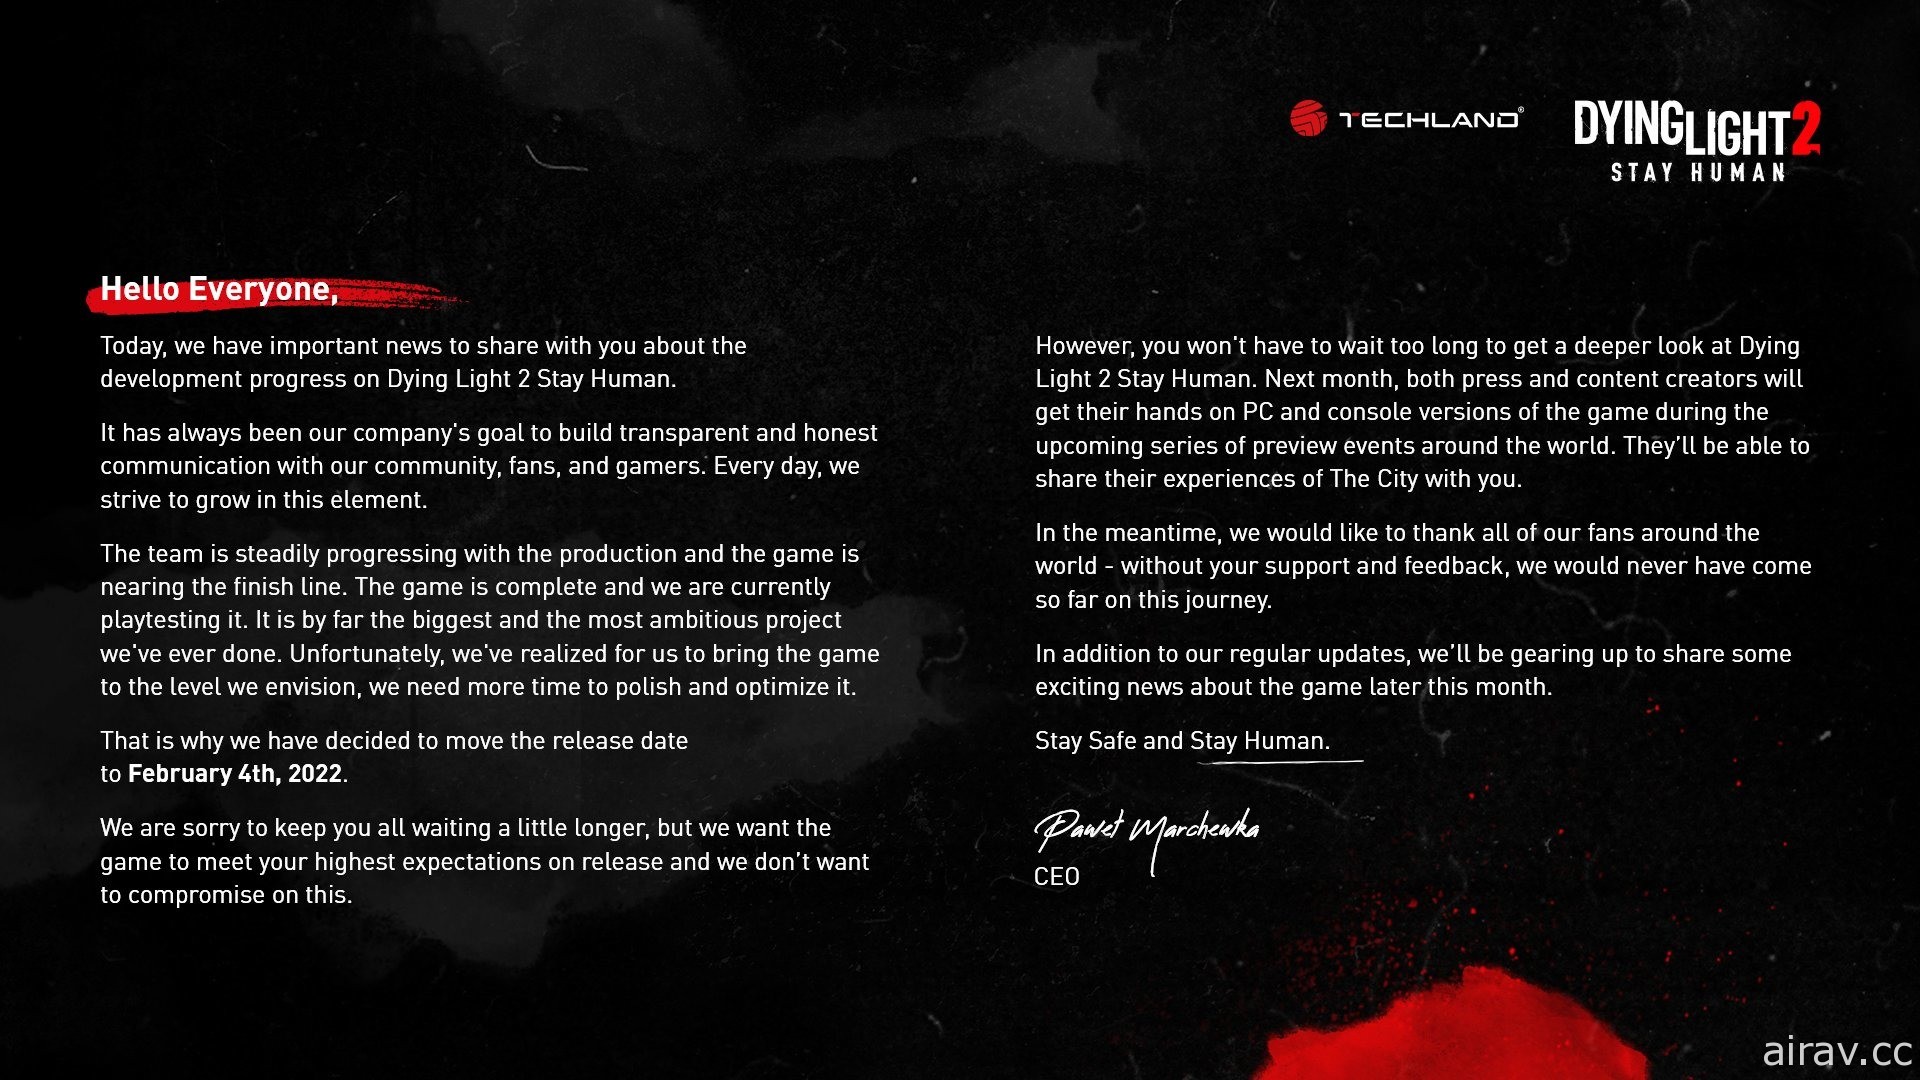 開放世界殭屍生存遊戲新作《垂死之光 2》宣布延期至 2022 年 2 月發售